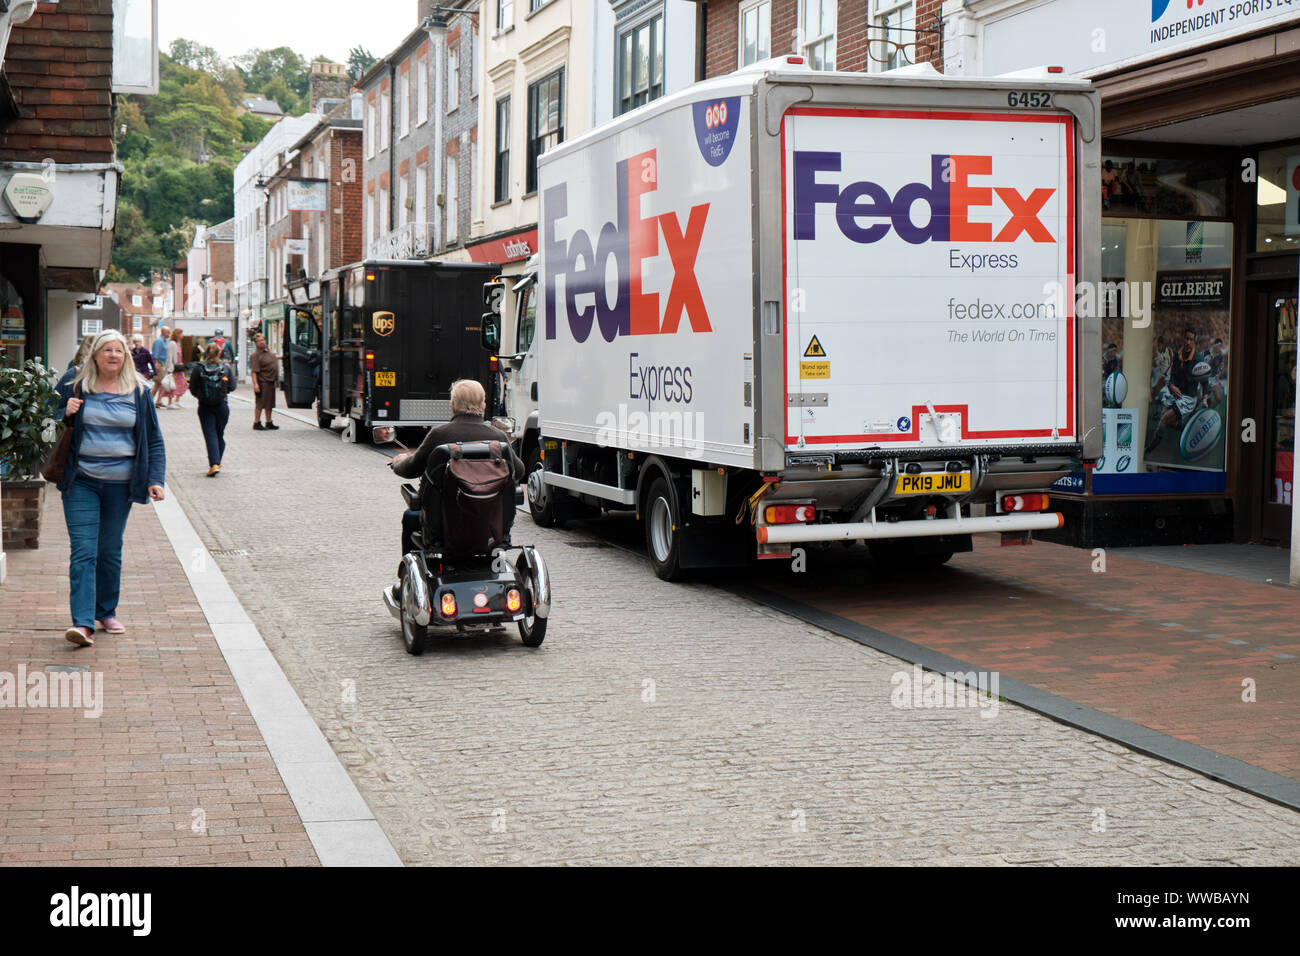 Fedex et UPS camions stationnés illégalement en zone piétonne de la ville, tandis qu'une personne à mobilité réduite passe sur la rue pavée. UK Lewes Banque D'Images